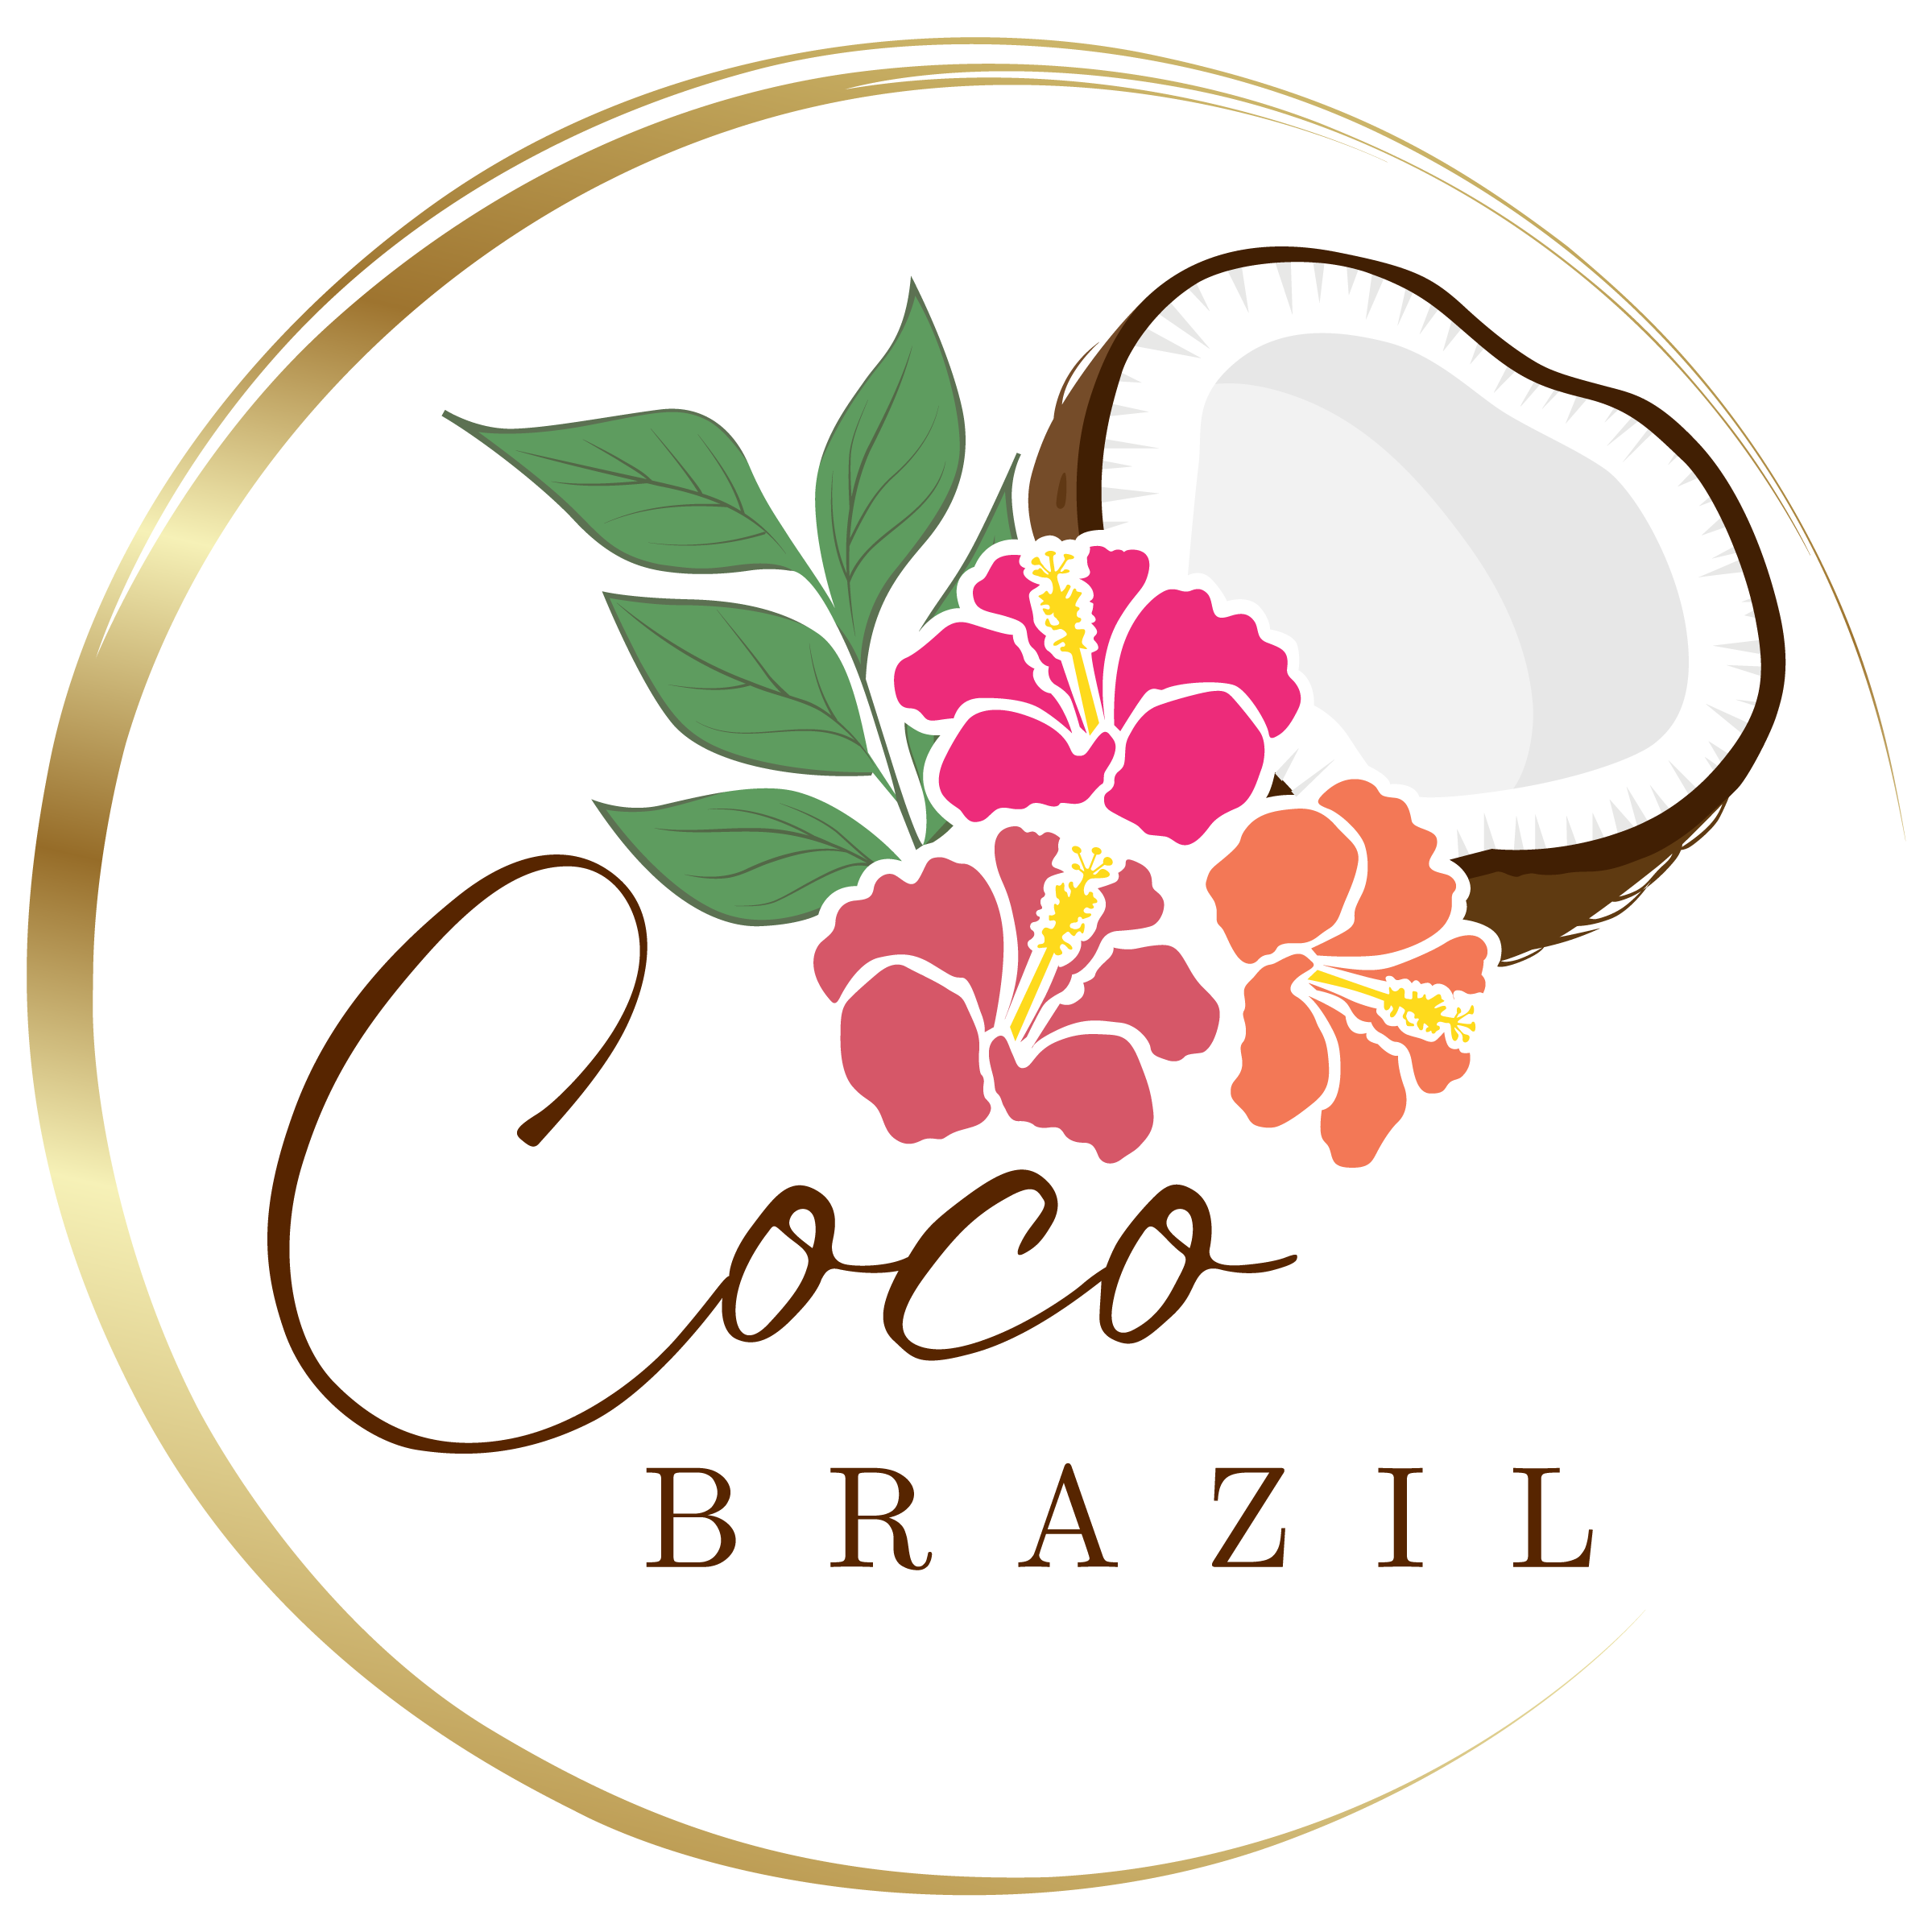 Coco Brazil 